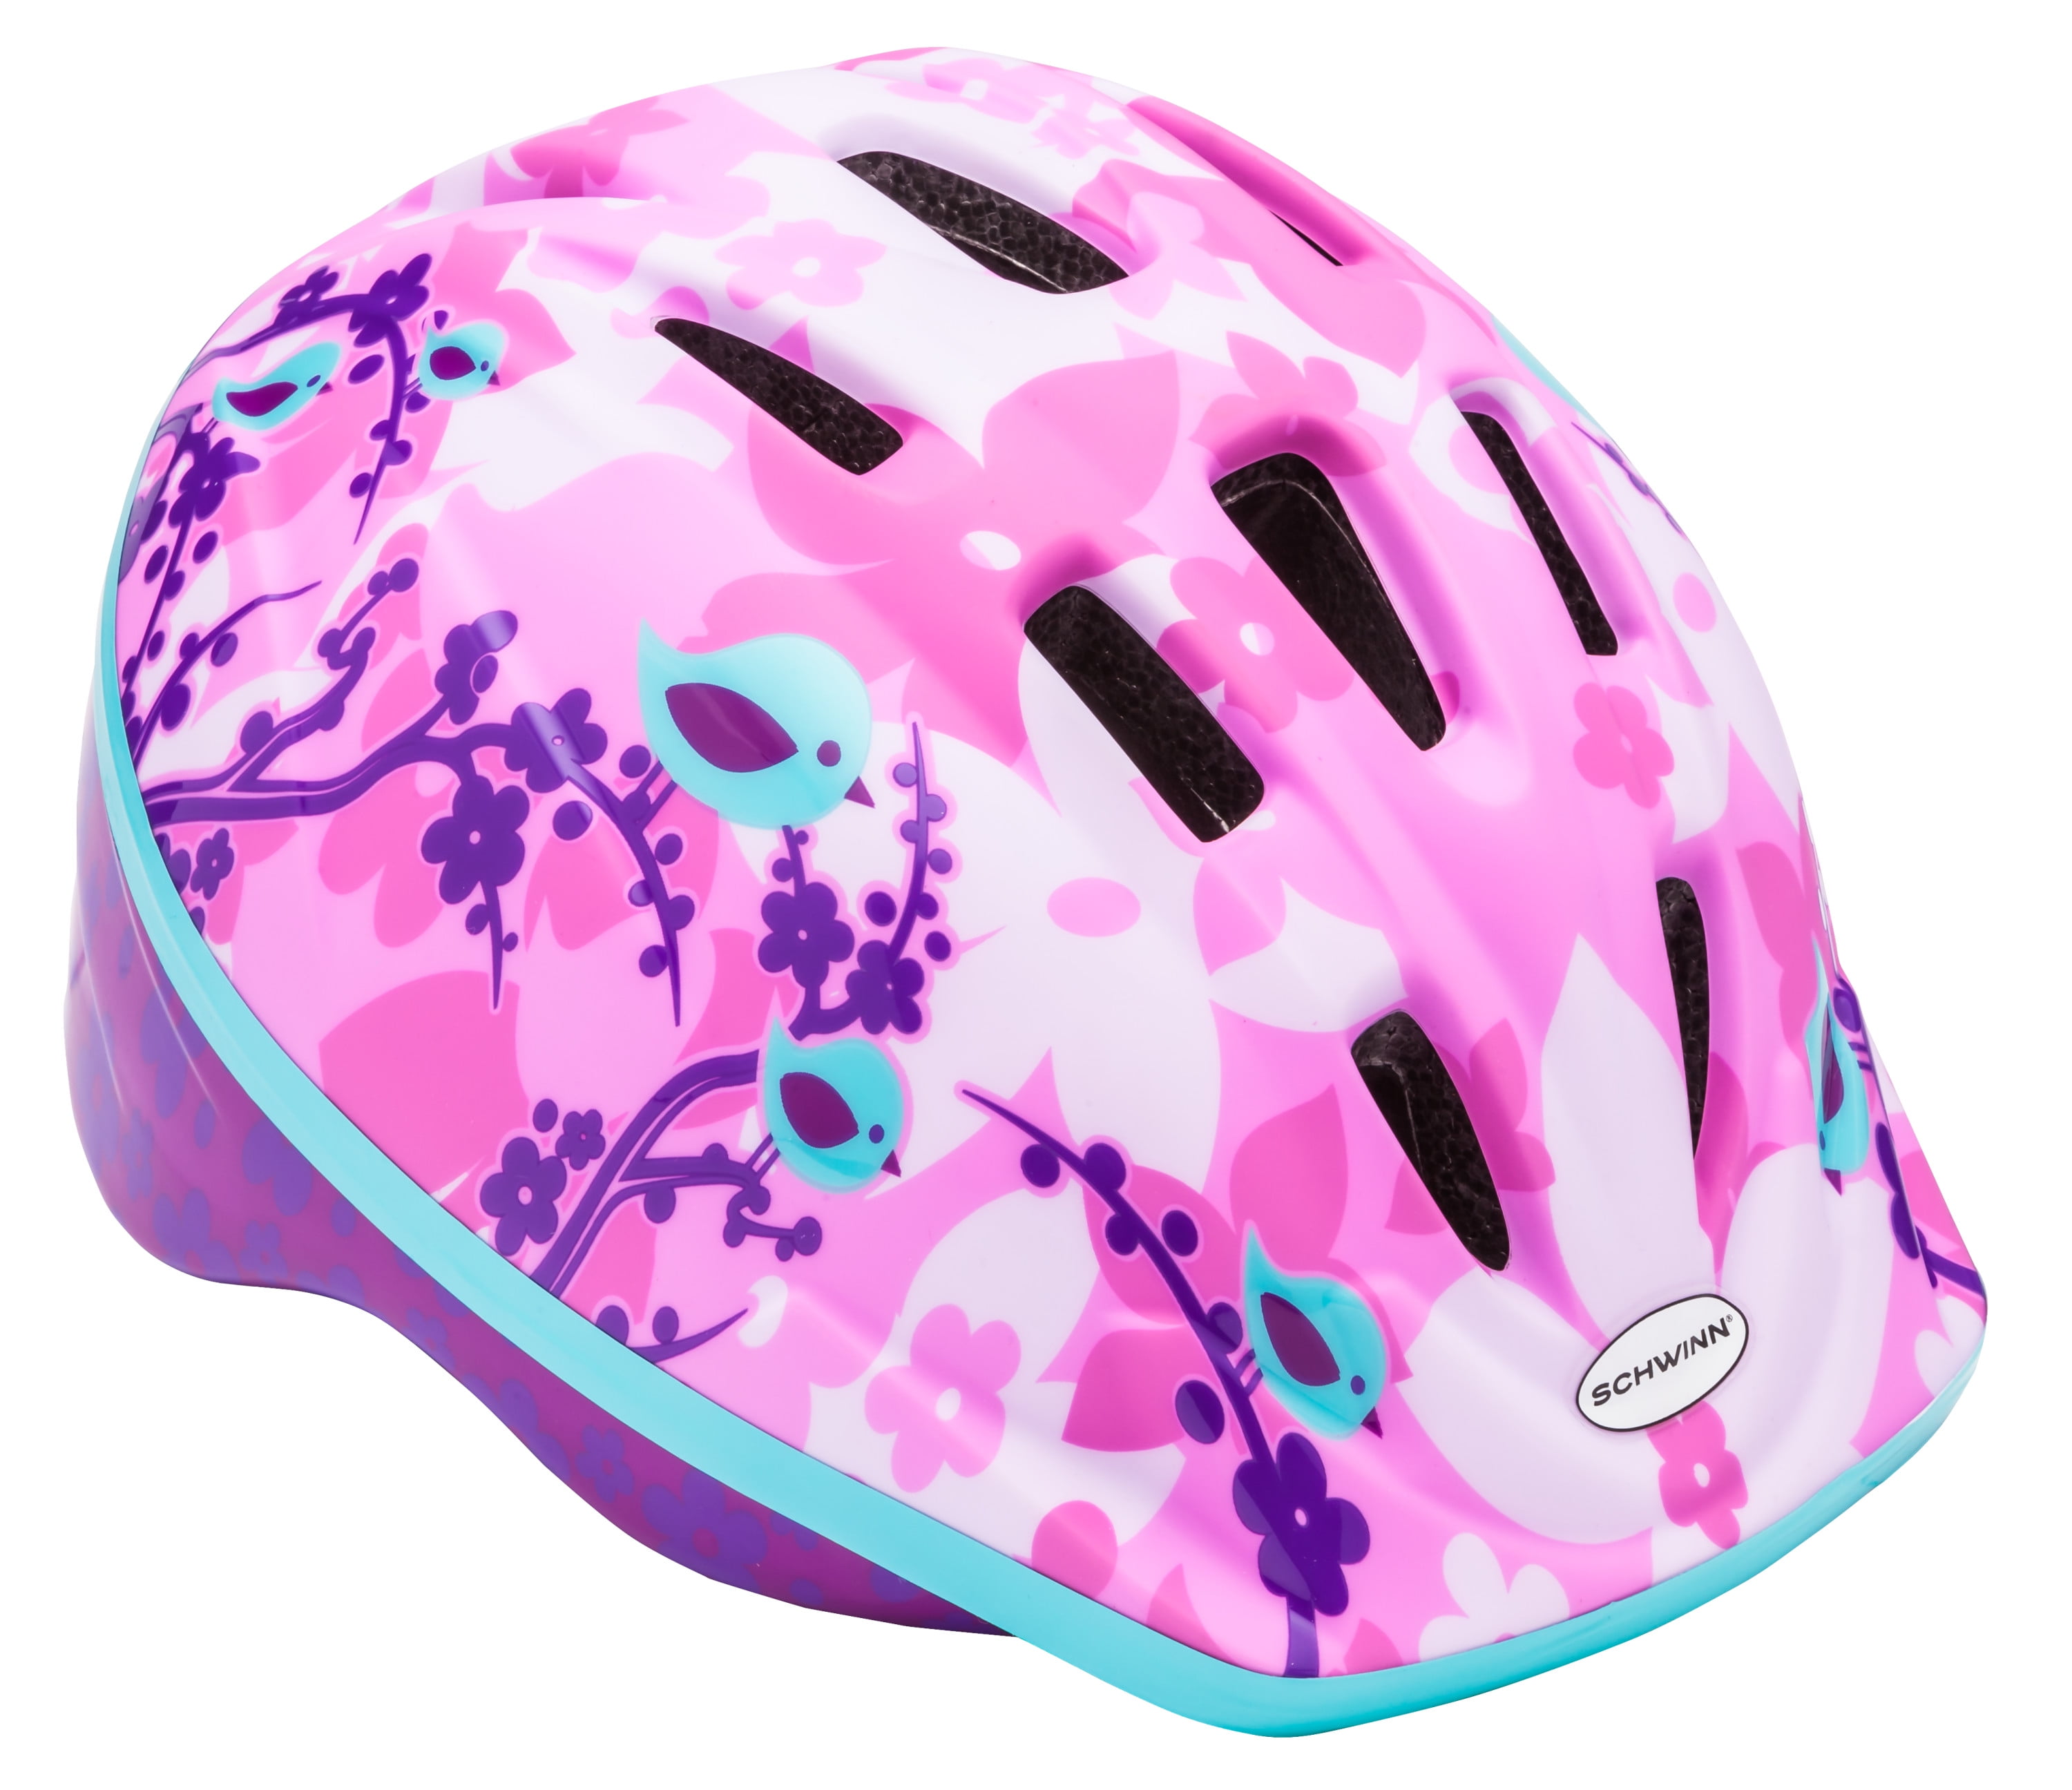 Pink kids helmet